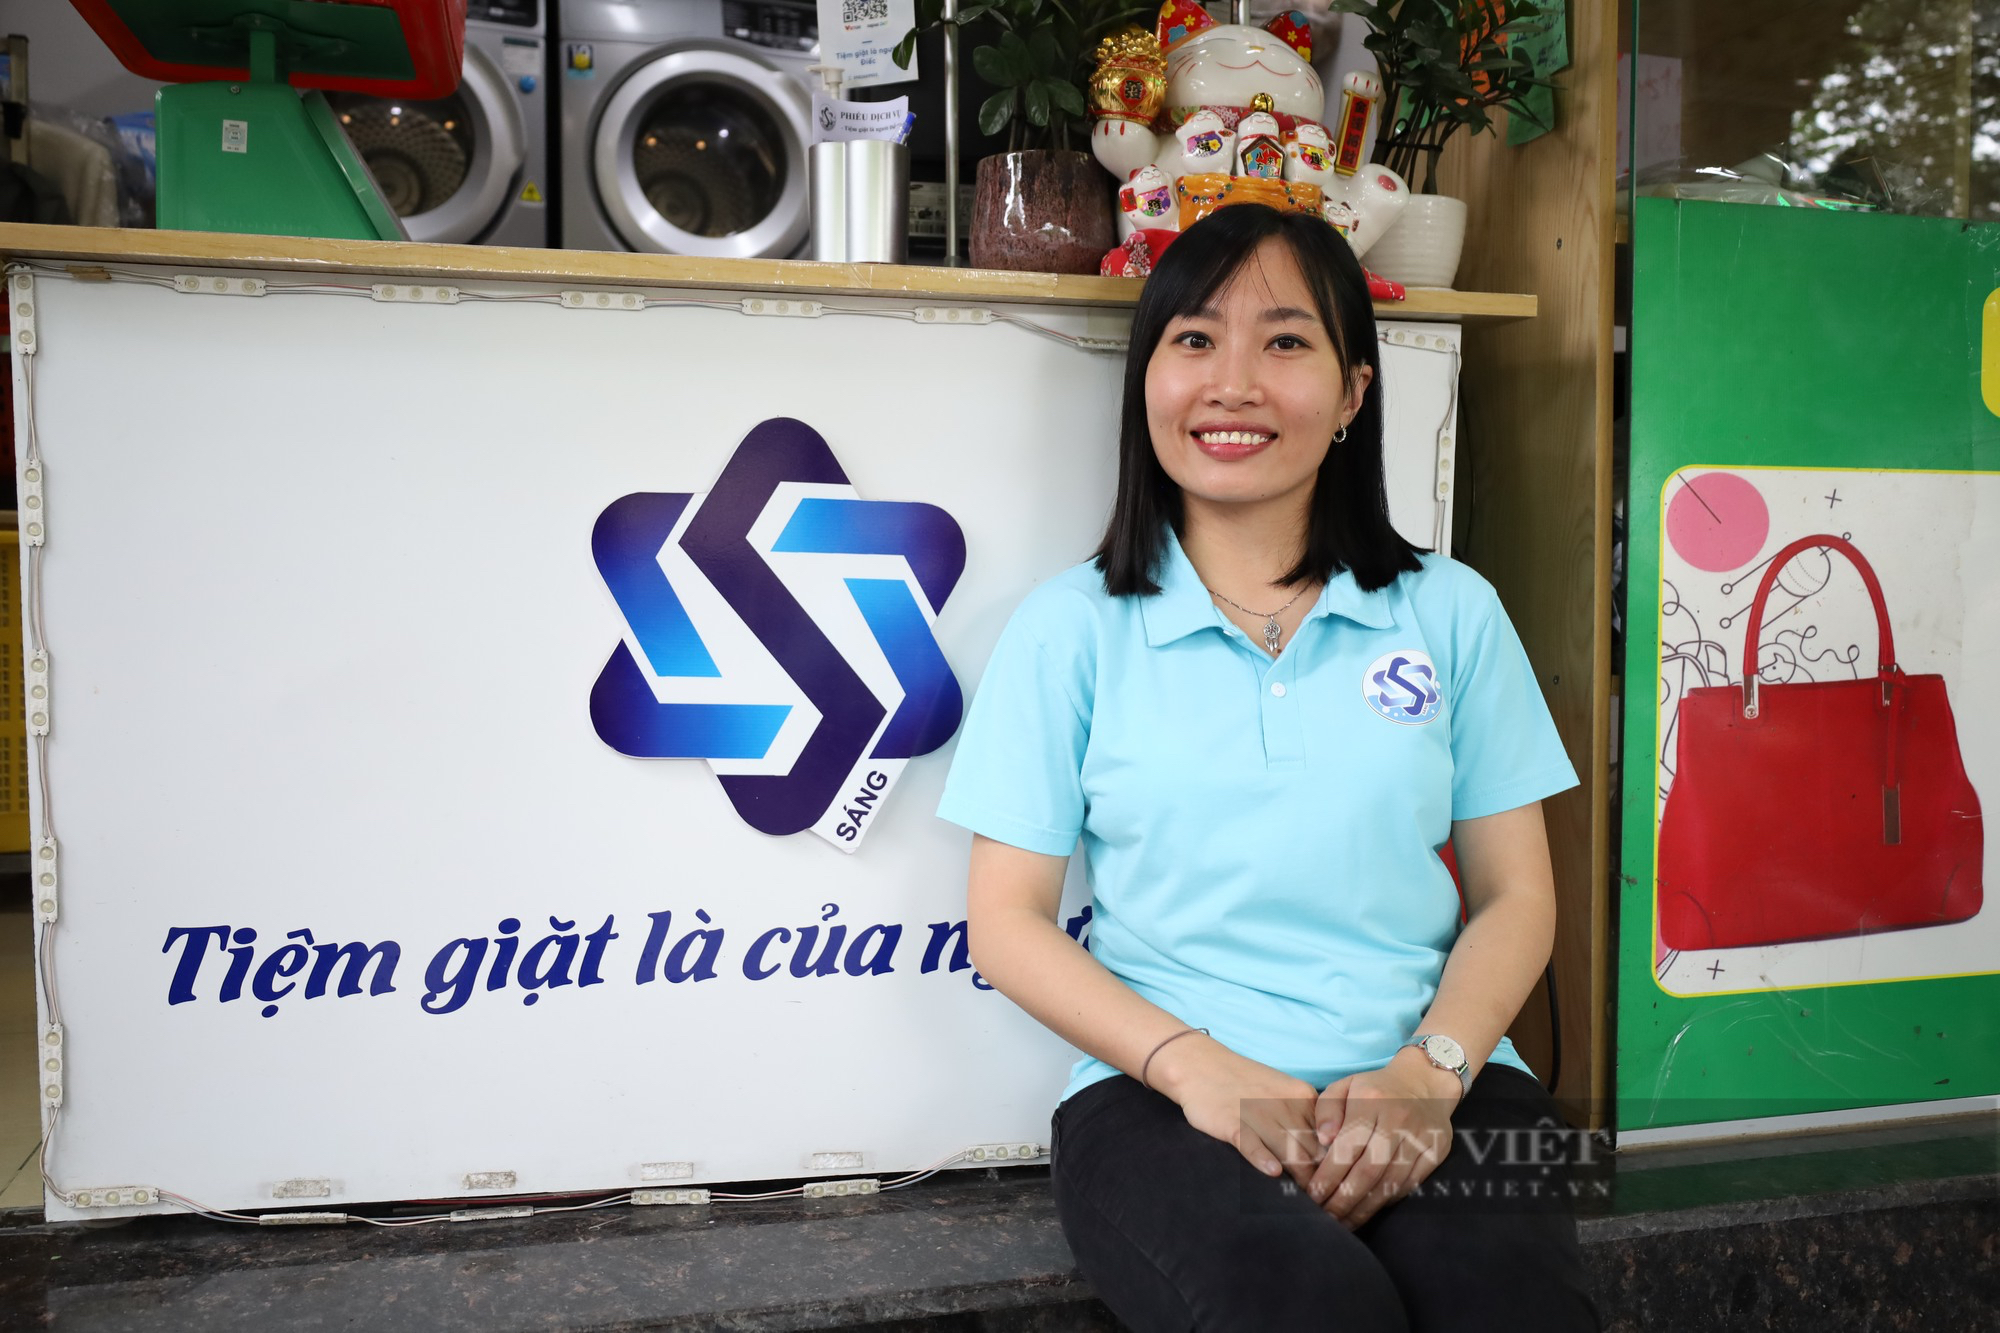 Tiệm giặt là đặc biệt ở Hà Nội chỉ sử dụng “cử chỉ bằng tay” để giao tiếp với khách hàng - Ảnh 3.